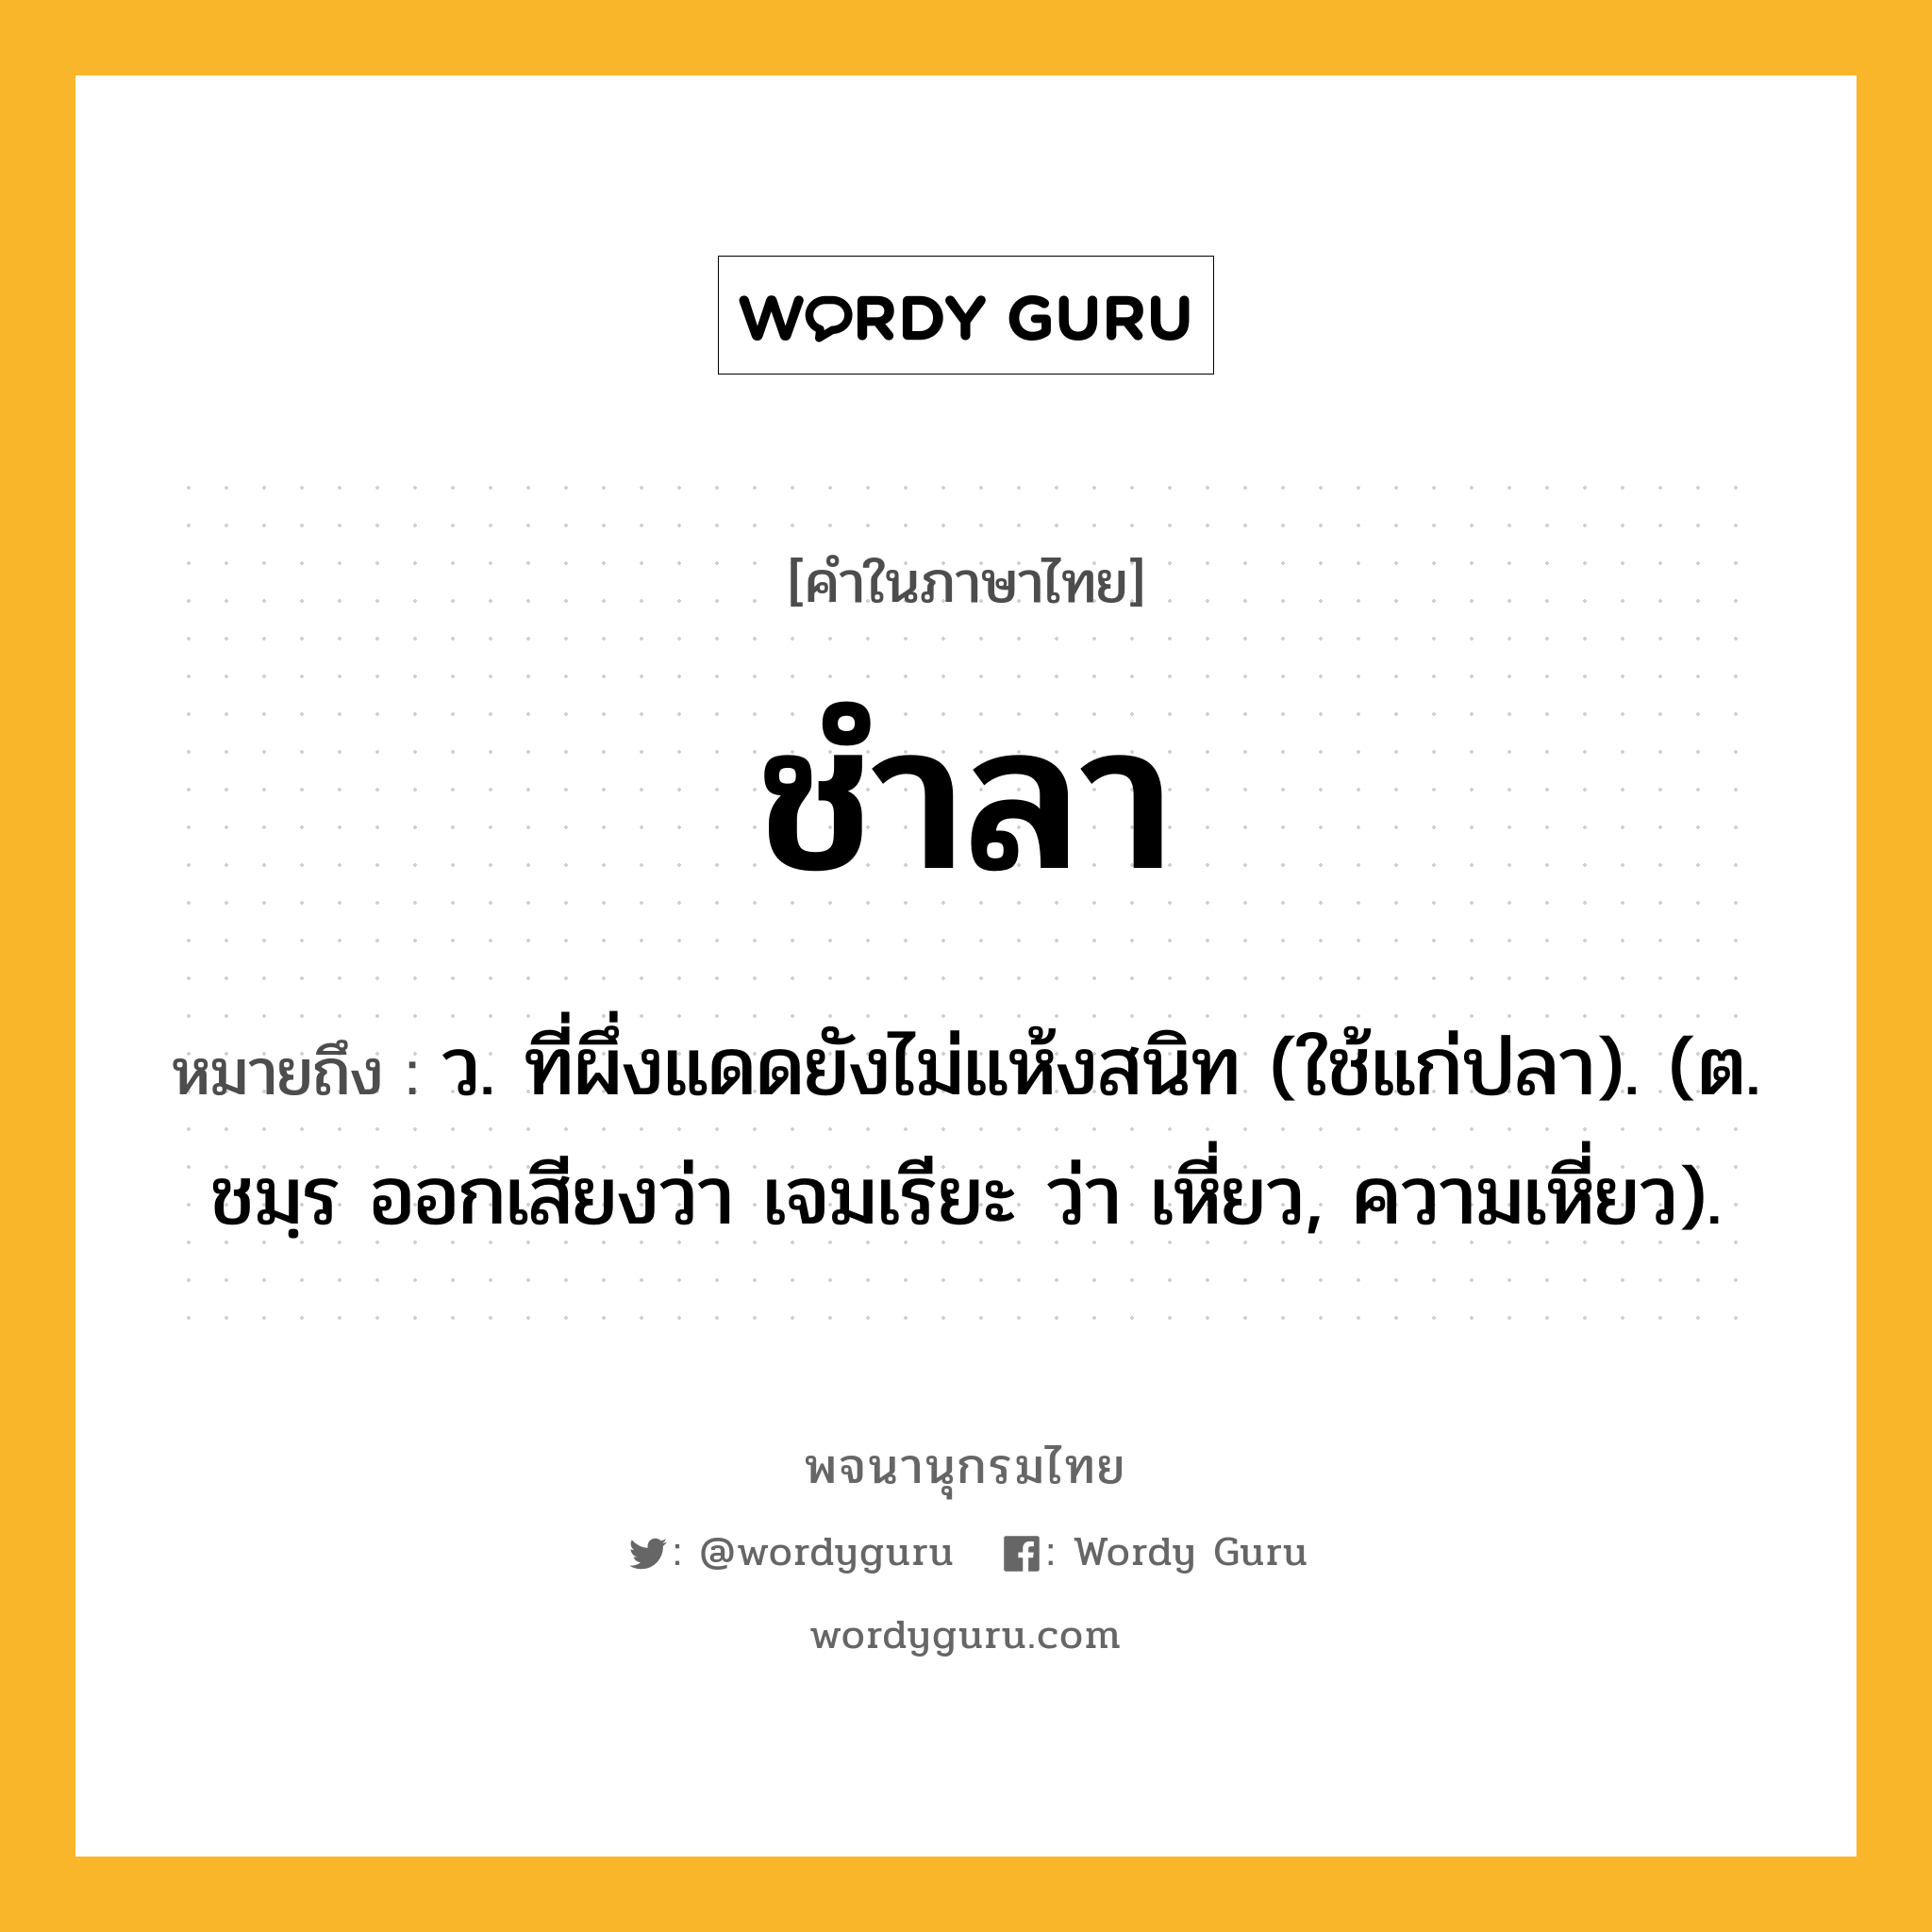 ชำลา หมายถึงอะไร?, คำในภาษาไทย ชำลา หมายถึง ว. ที่ผึ่งแดดยังไม่แห้งสนิท (ใช้แก่ปลา). (ต. ชมฺร ออกเสียงว่า เจมเรียะ ว่า เหี่ยว, ความเหี่ยว).